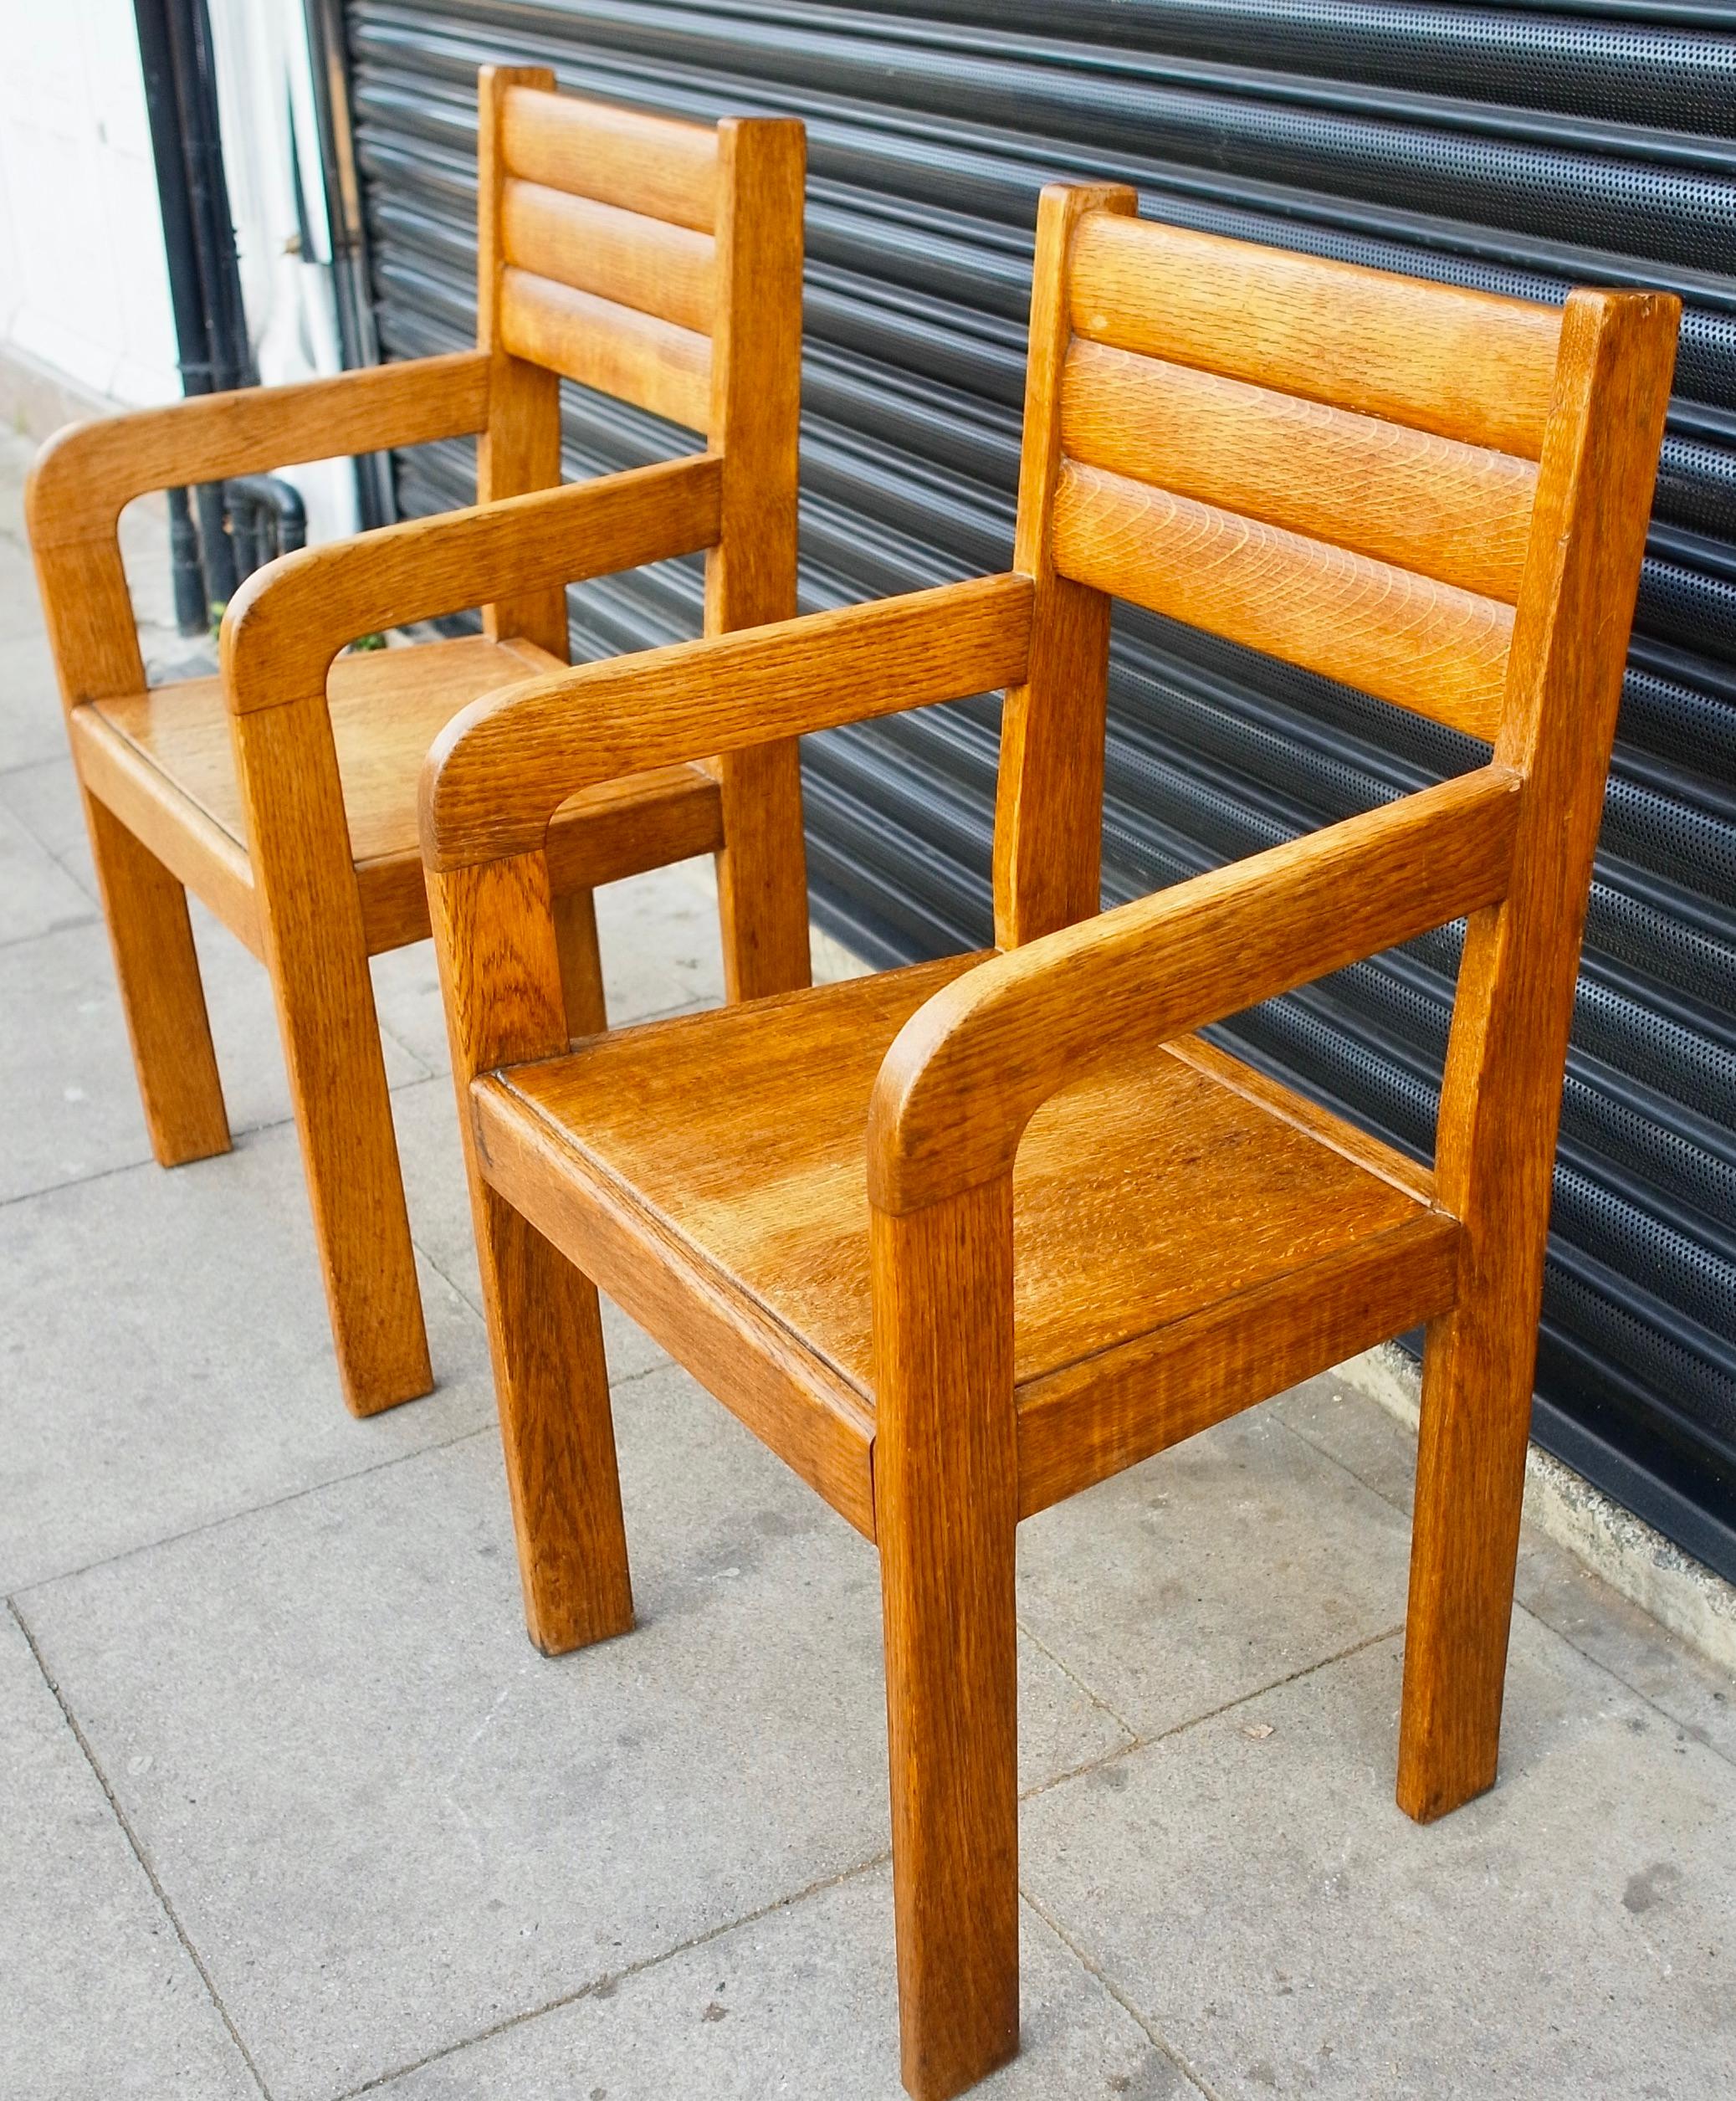 Ein Paar originaler und einzigartiger englischer Eichenholzstühle aus dem Jahr 1949, handgefertigt von Schnitzern. Obwohl der Hersteller nicht bekannt ist, zeigen die Stühle sowohl Sorgfalt als auch Qualität in ihrer Konstruktion.